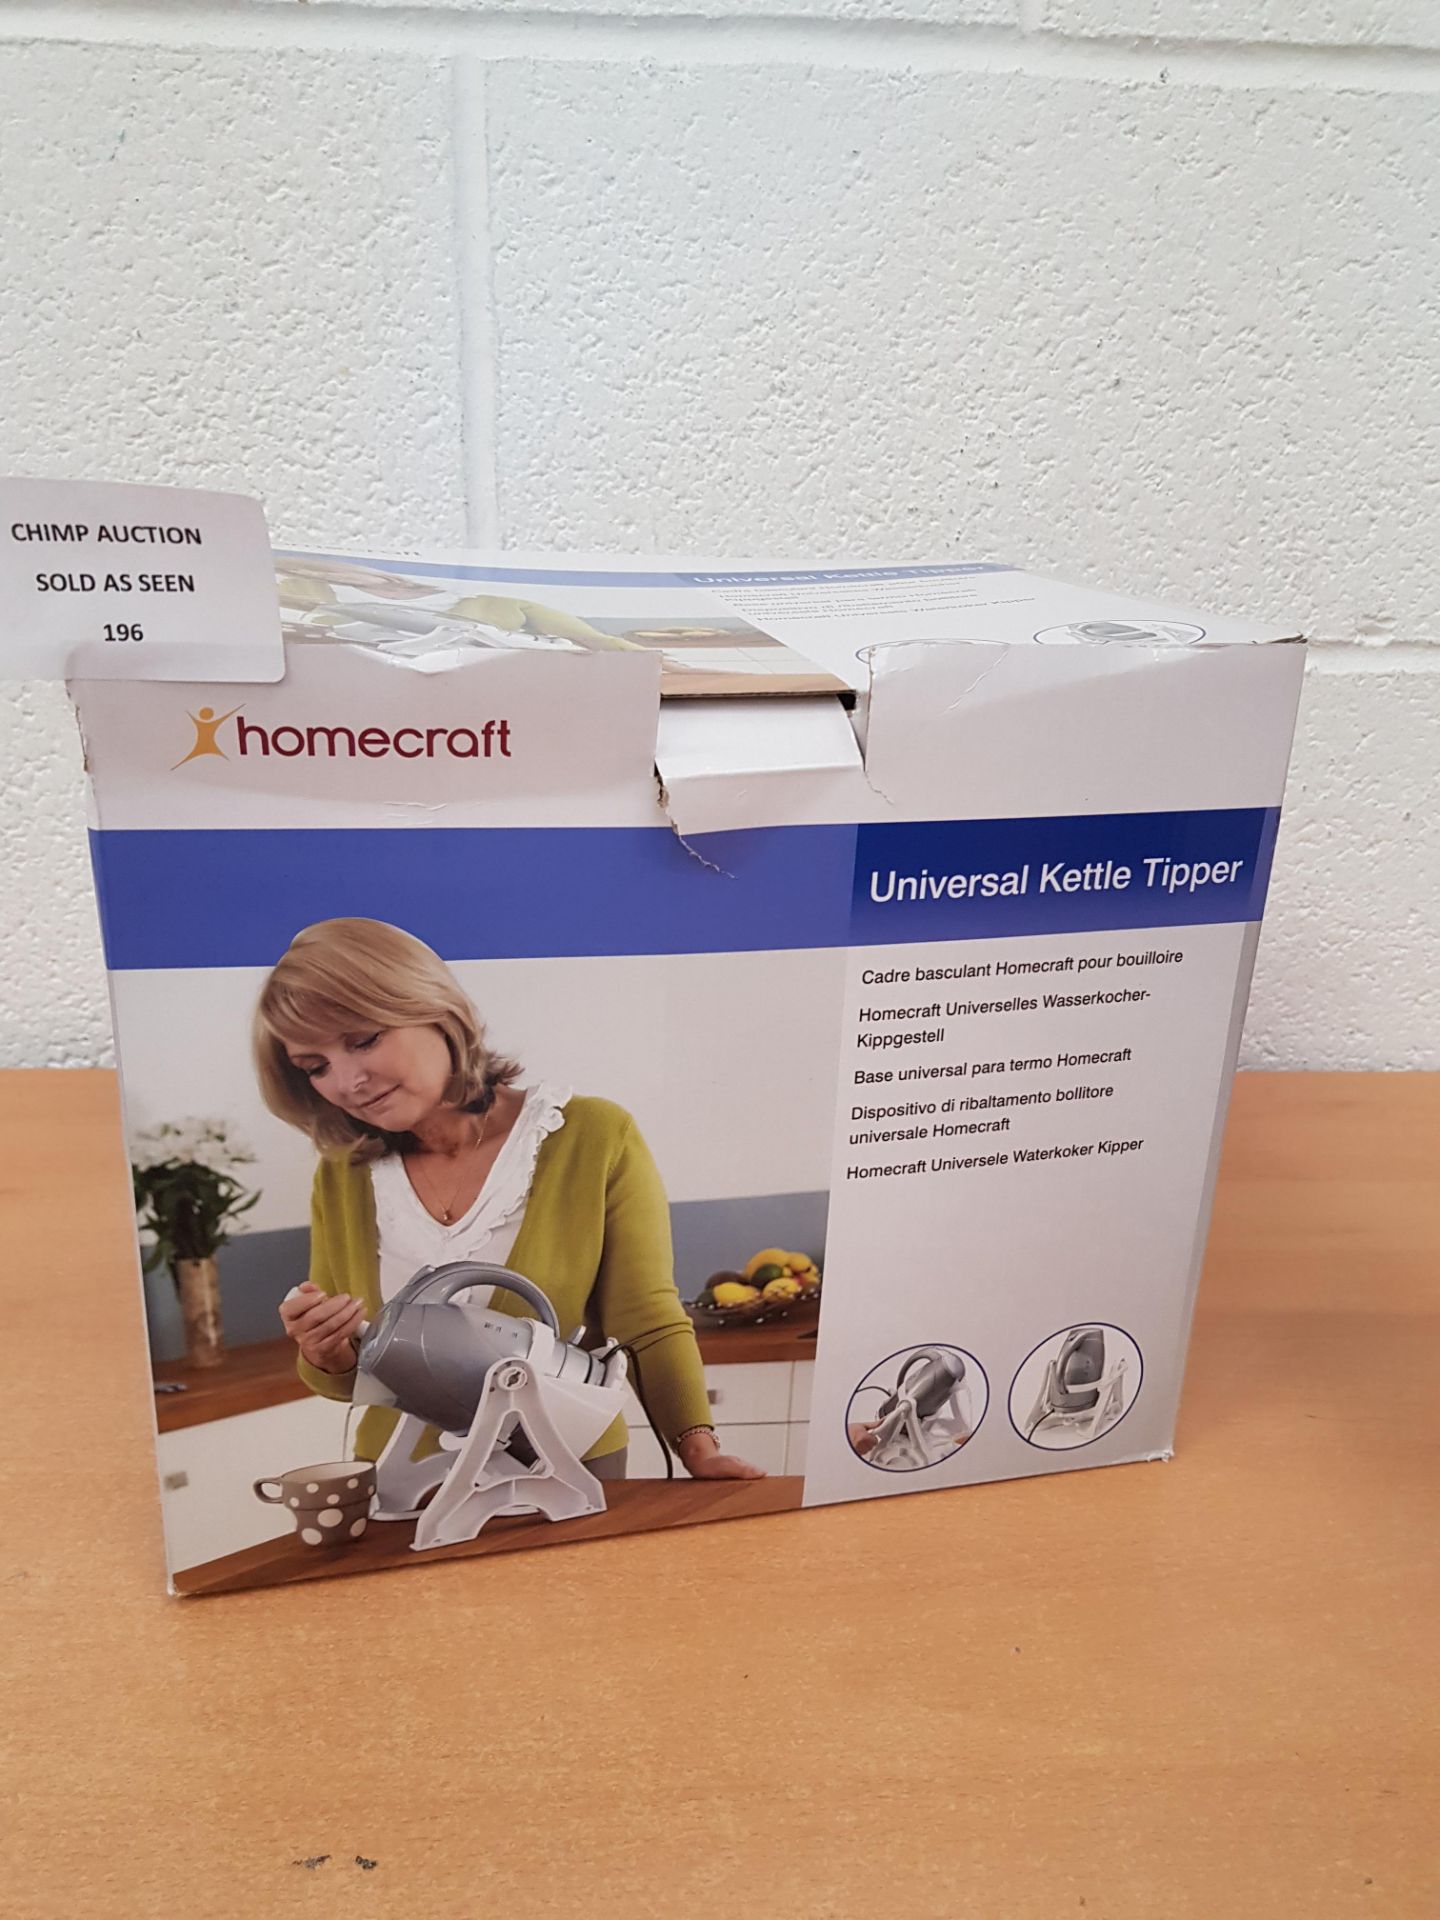 HomeCraft universal Kettle Tipper